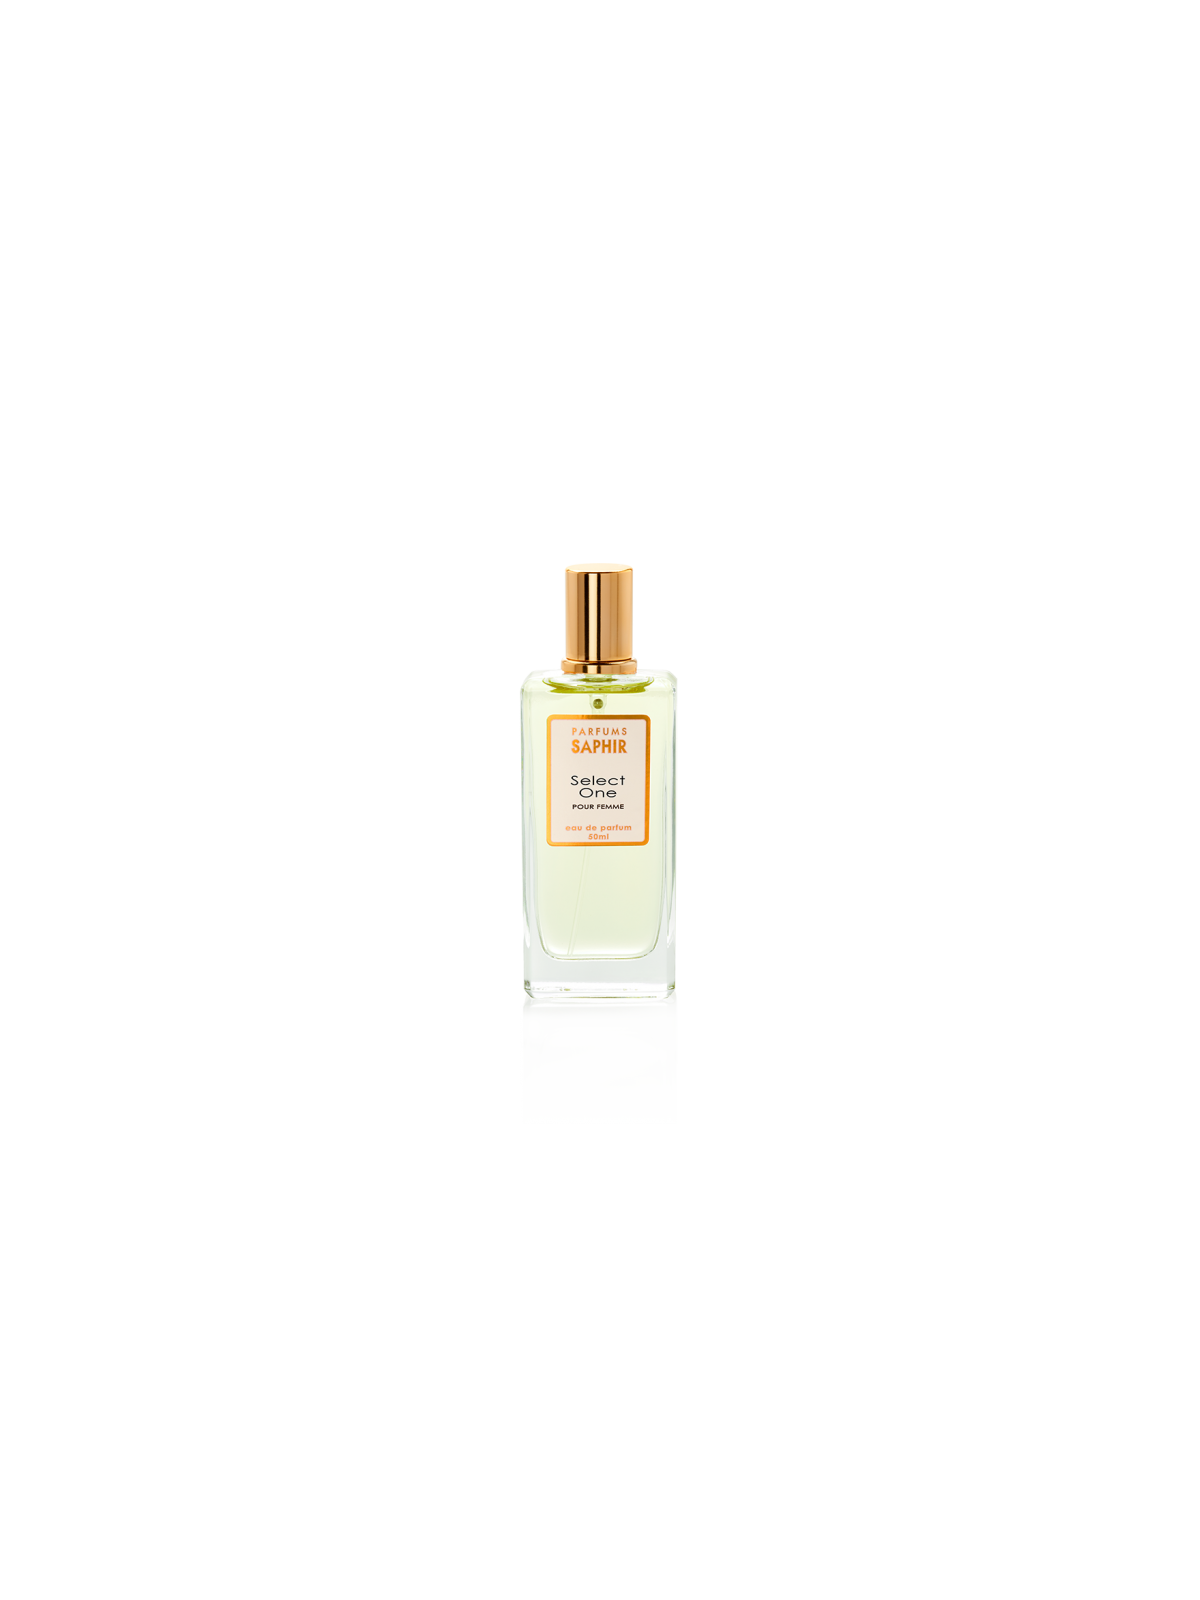 Comprar Perfume SAPHIR Select one 50ml. en Perfumes para mujer por sólo 4,95 € o un precio específico de 4,95 € en Thalie Care